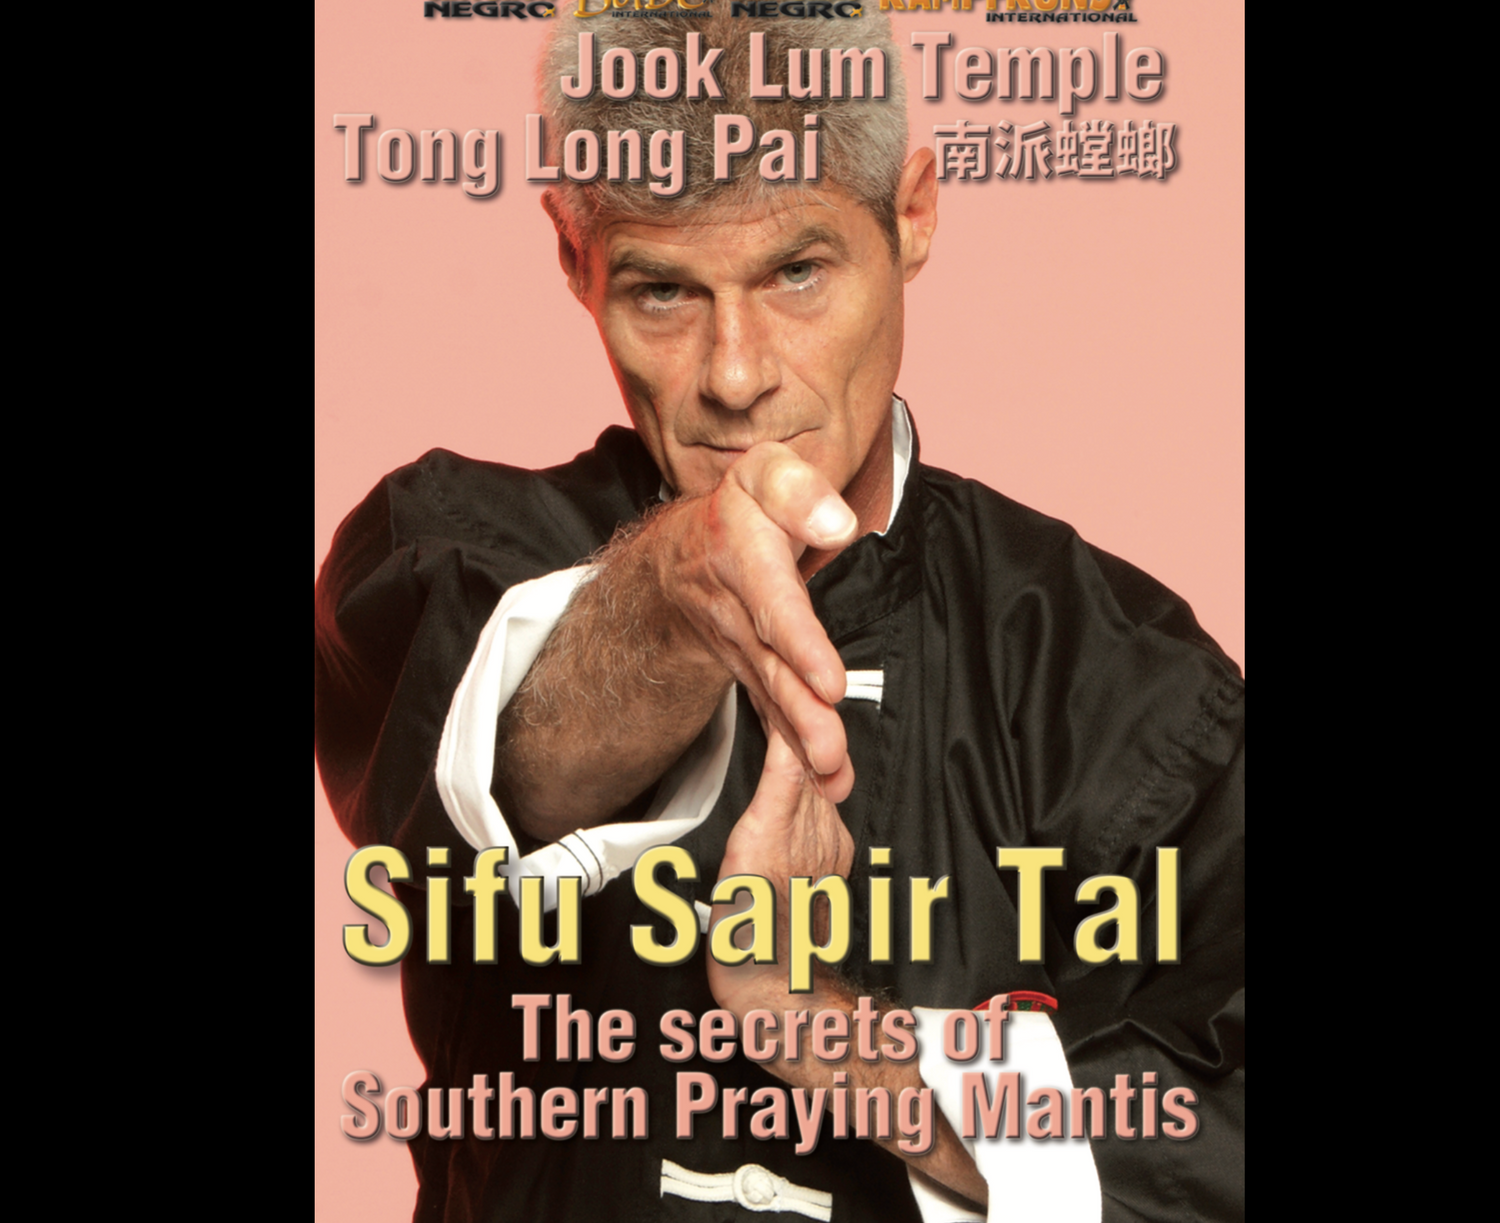 Secretos de la mantis religiosa del sur por Sapir Tal (bajo demanda)